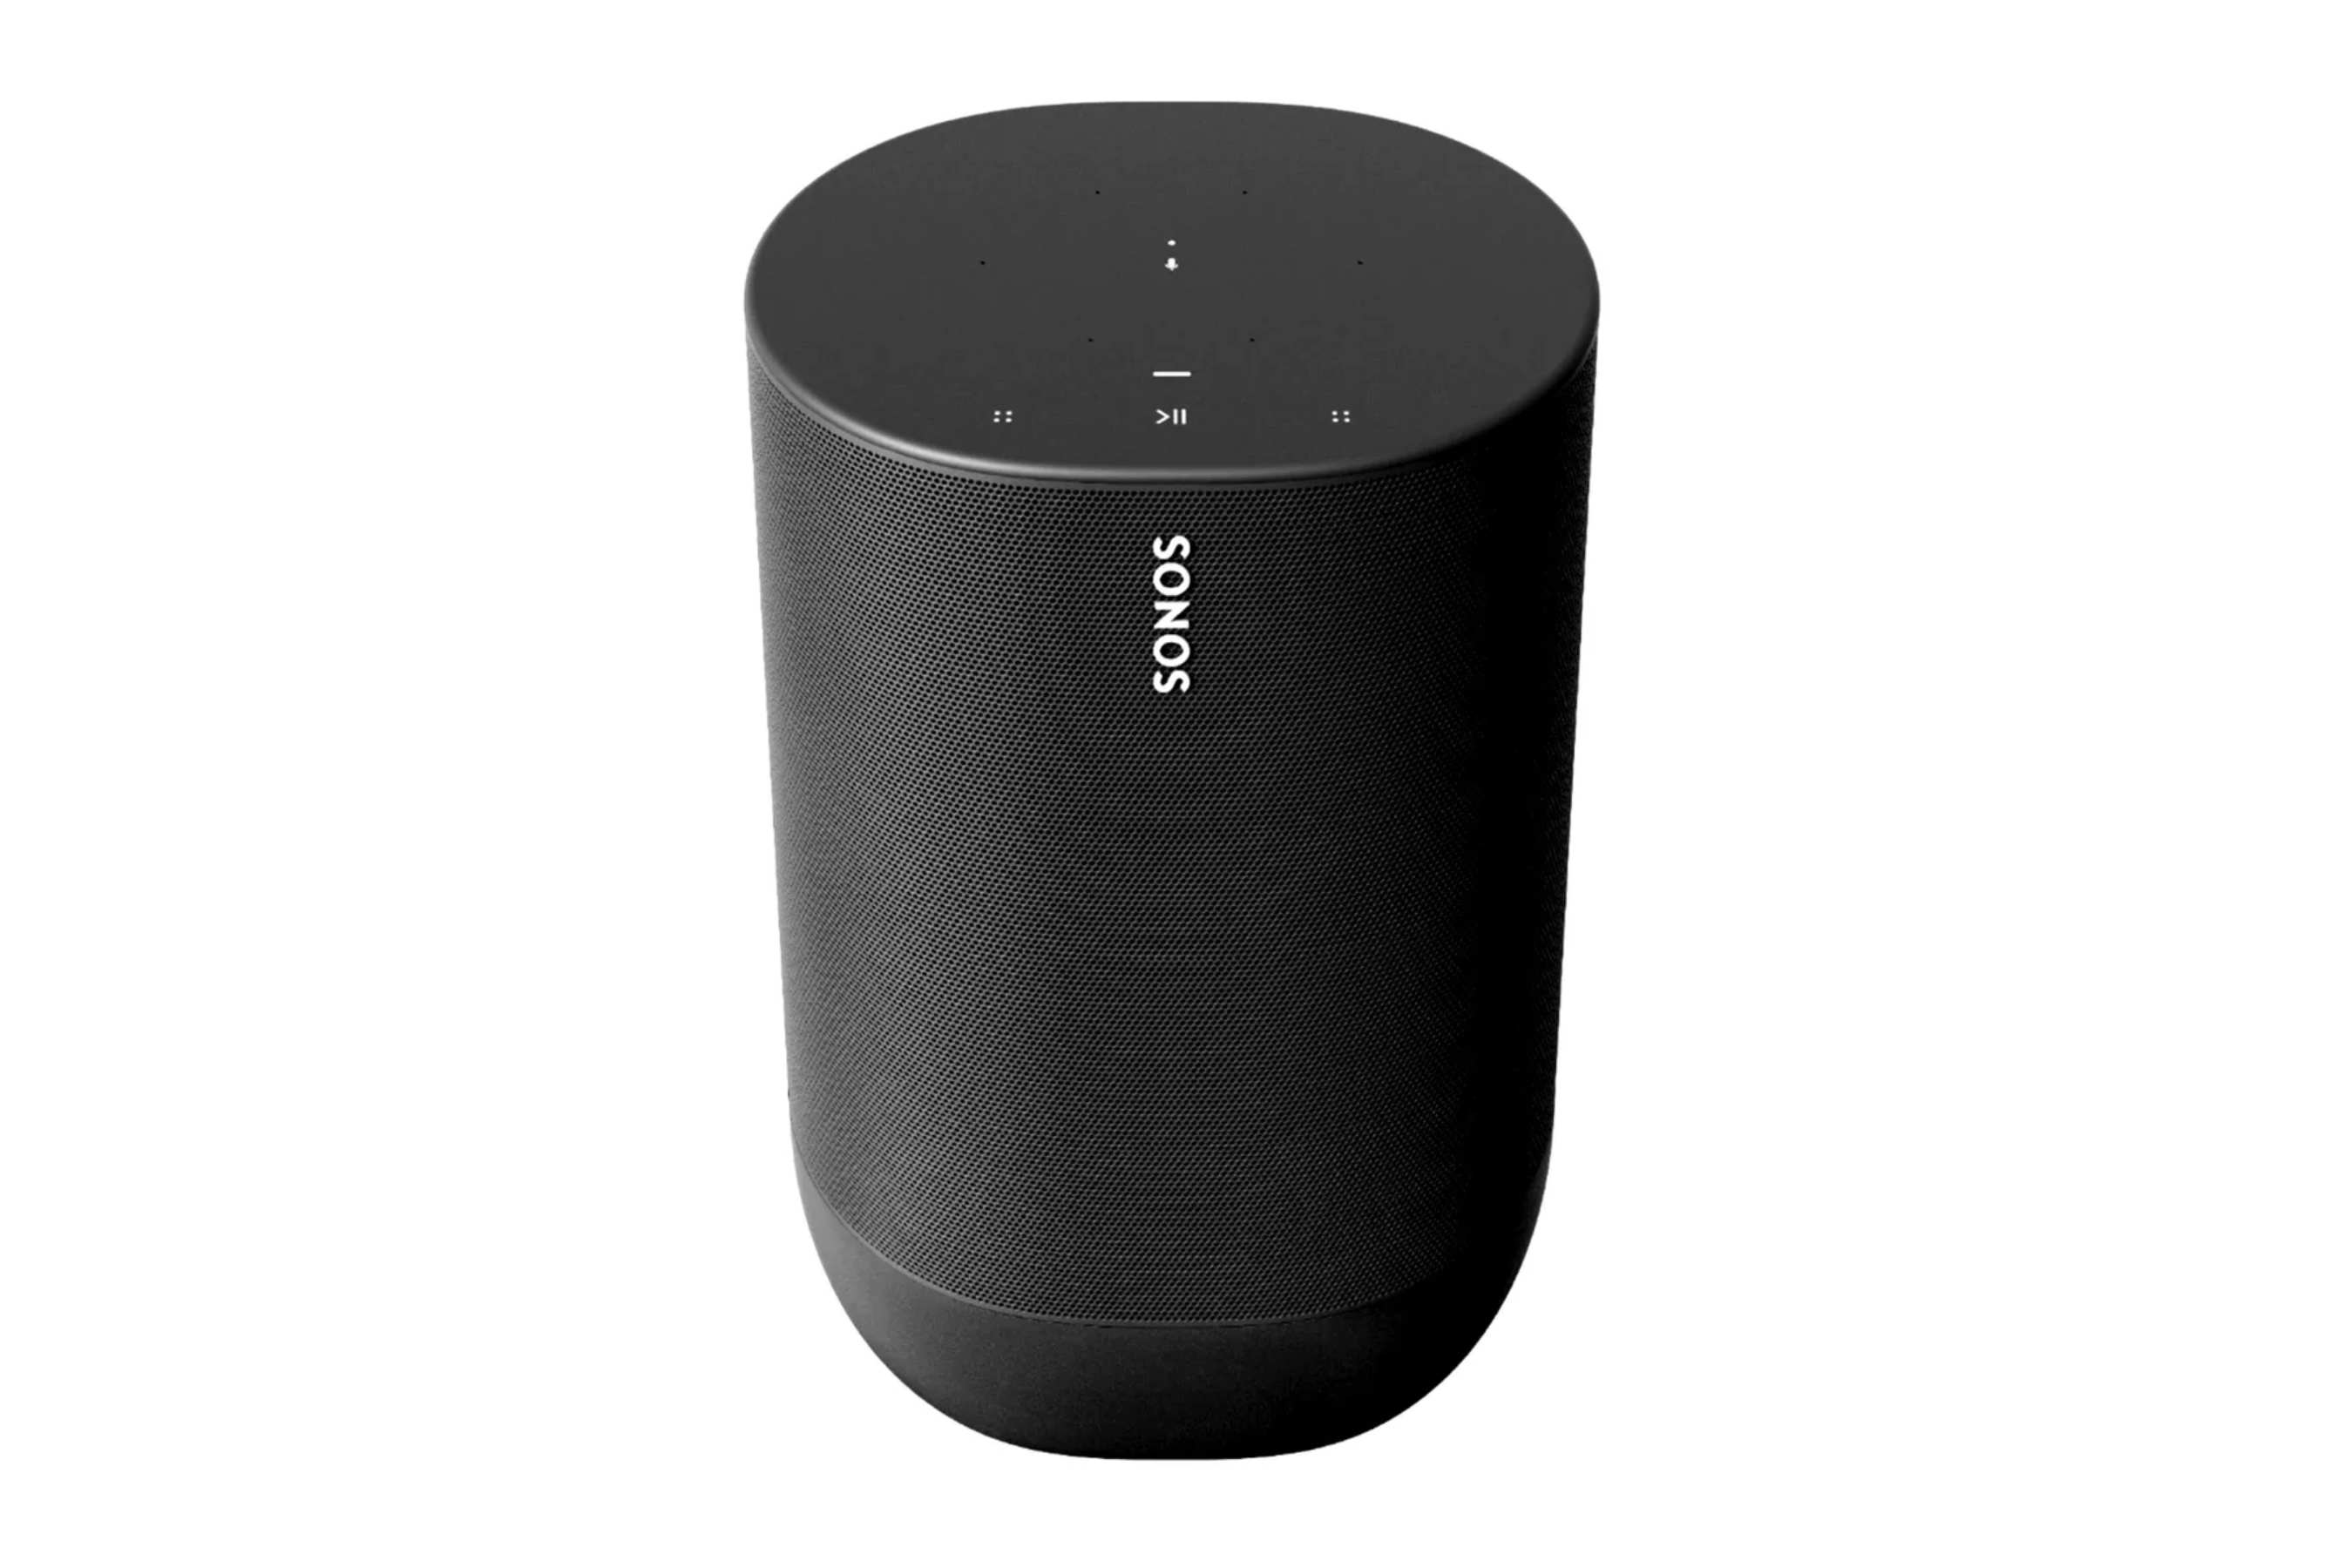 Sonos telah menyiapkan speaker Bluetooth portabel pertamanya